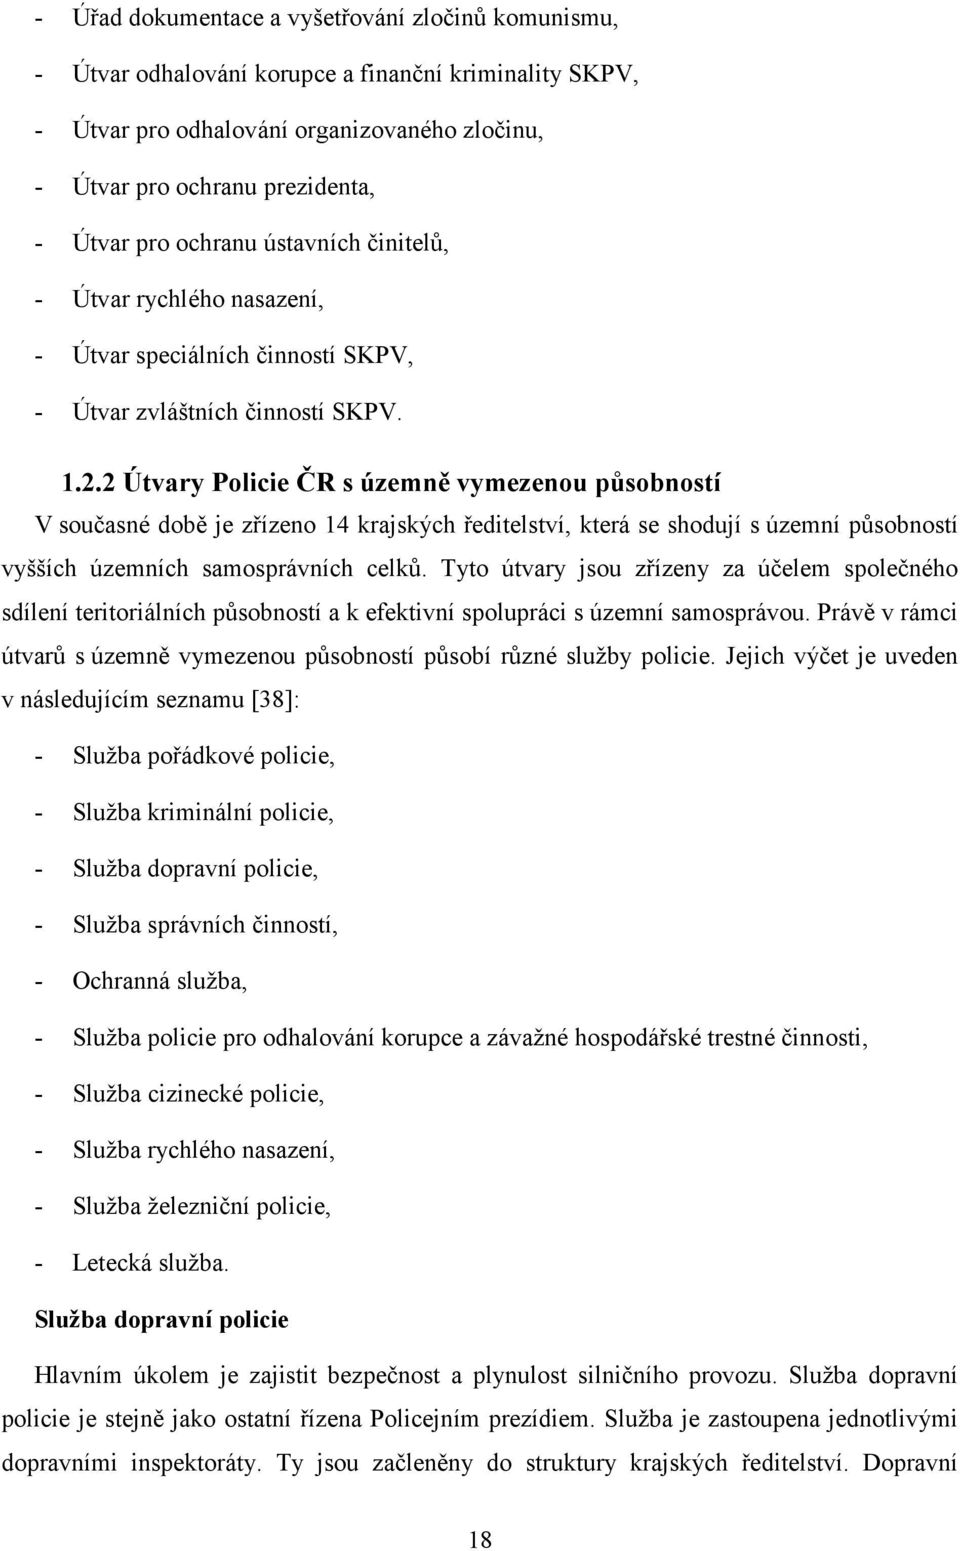 2 Útvary Policie ČR s územně vymezenou působností V současné době je zřízeno 14 krajských ředitelství, která se shodují s územní působností vyšších územních samosprávních celků.